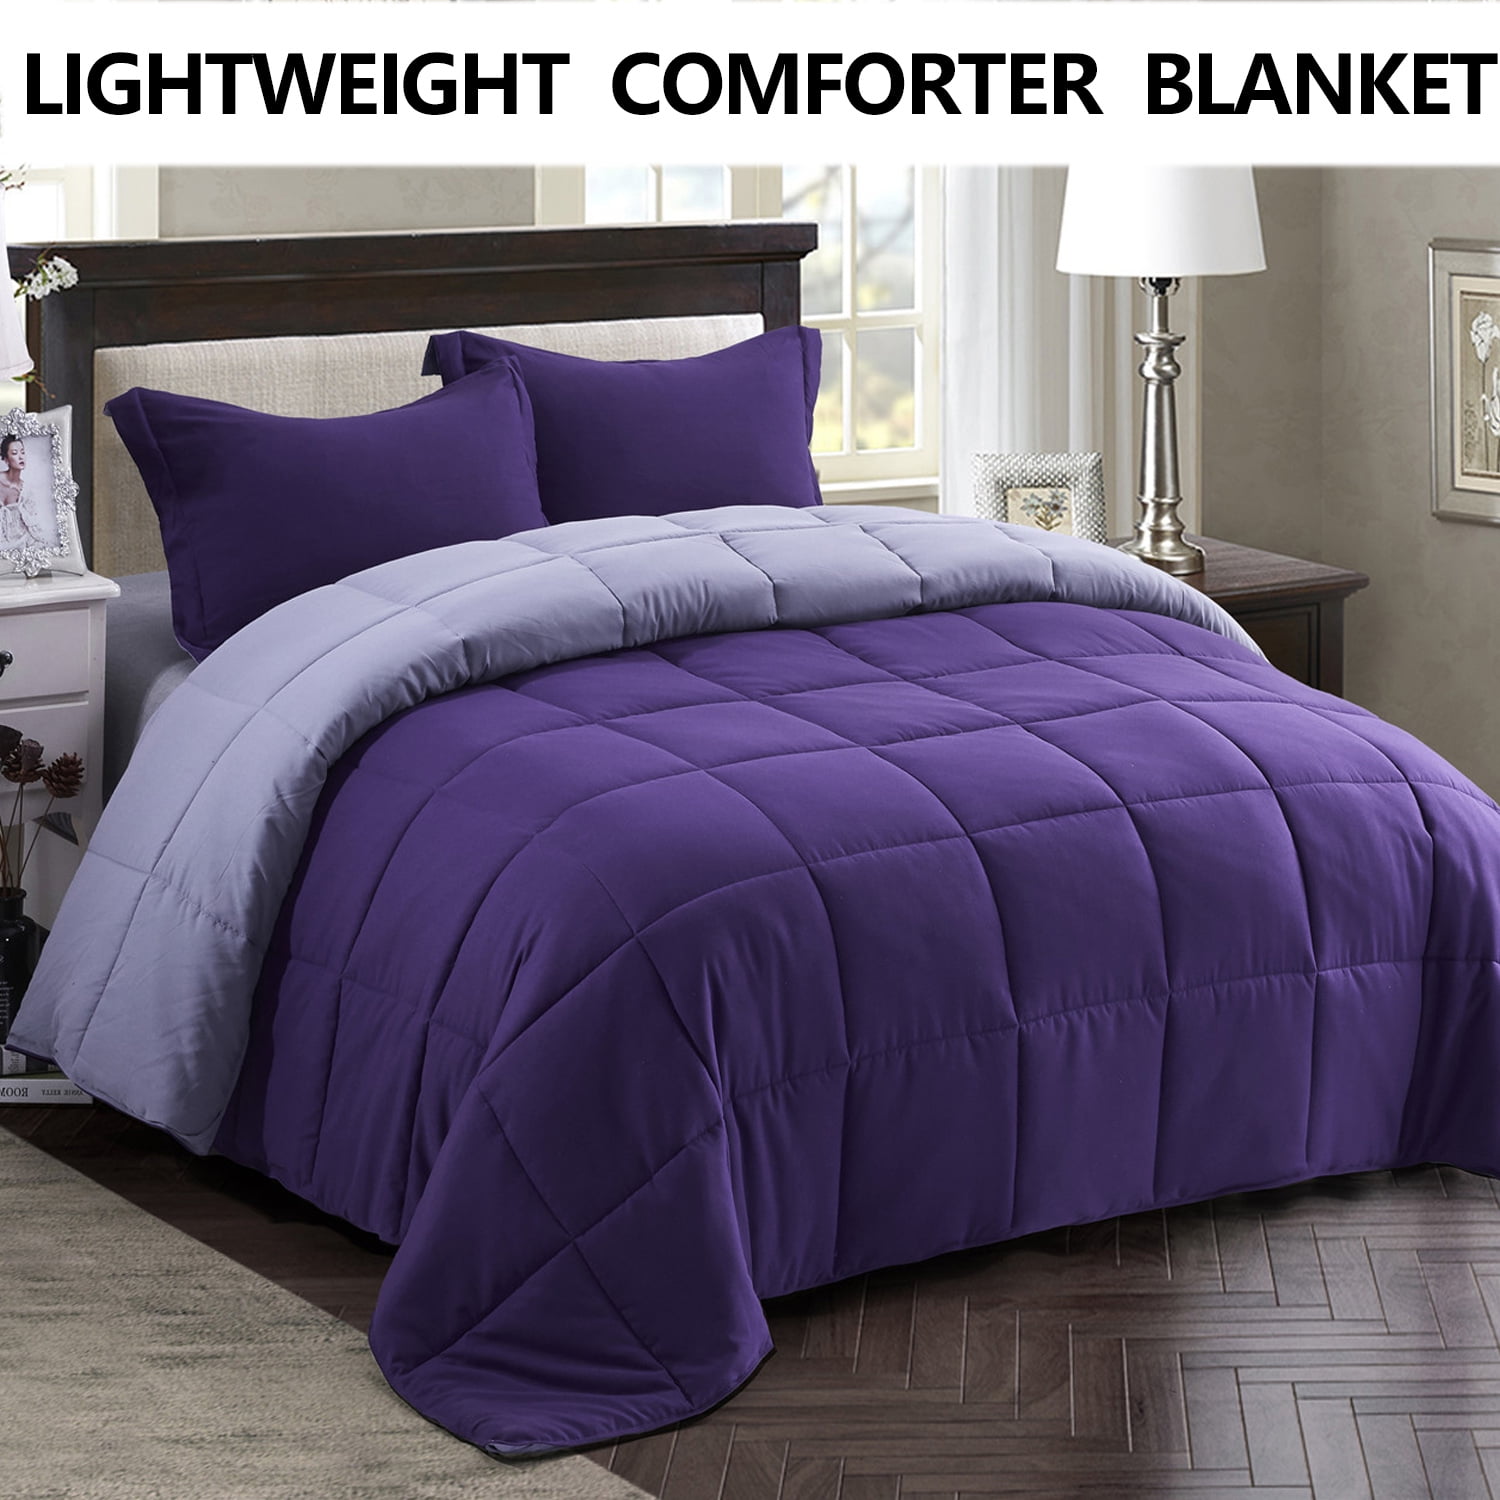 Comforter All Season Down Alternative Soft Reversible Light Blanket with Shams 